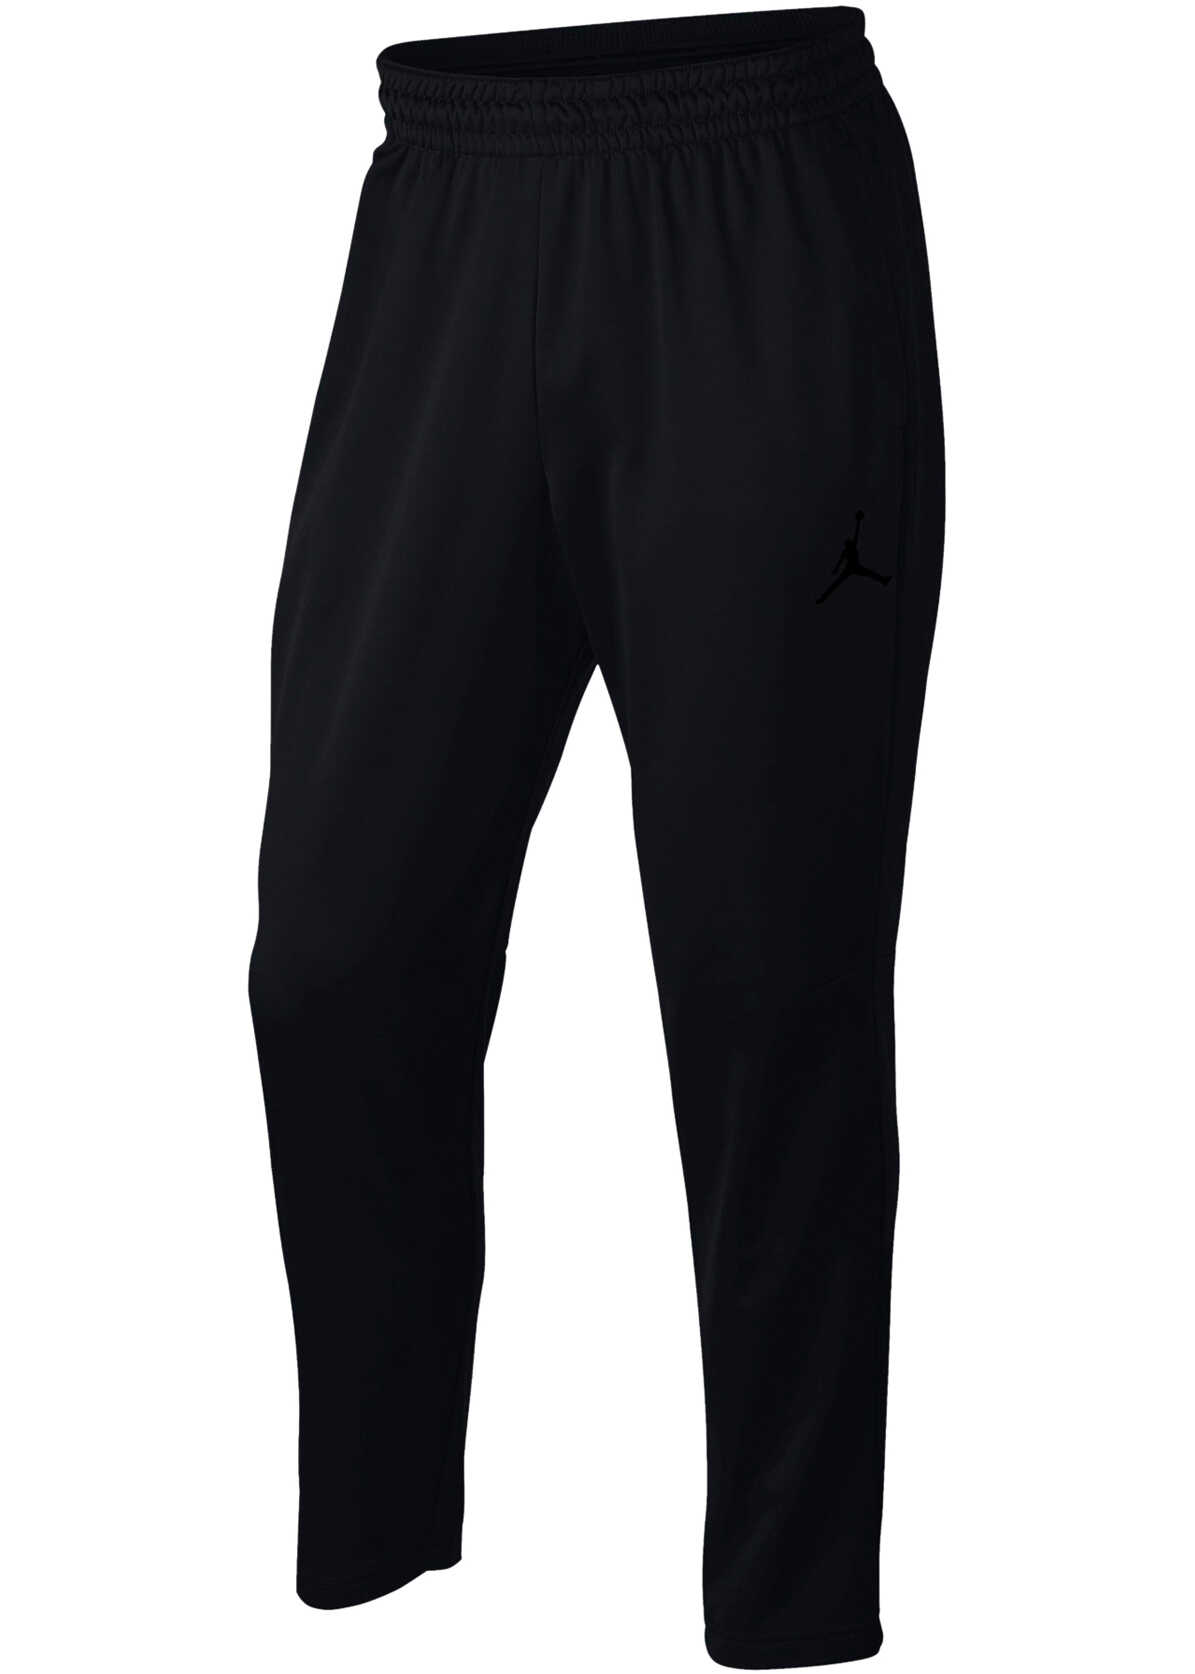 Pantalon Nike Jordan Therma 23 Alpha Men's Black Training Pants Black-Black